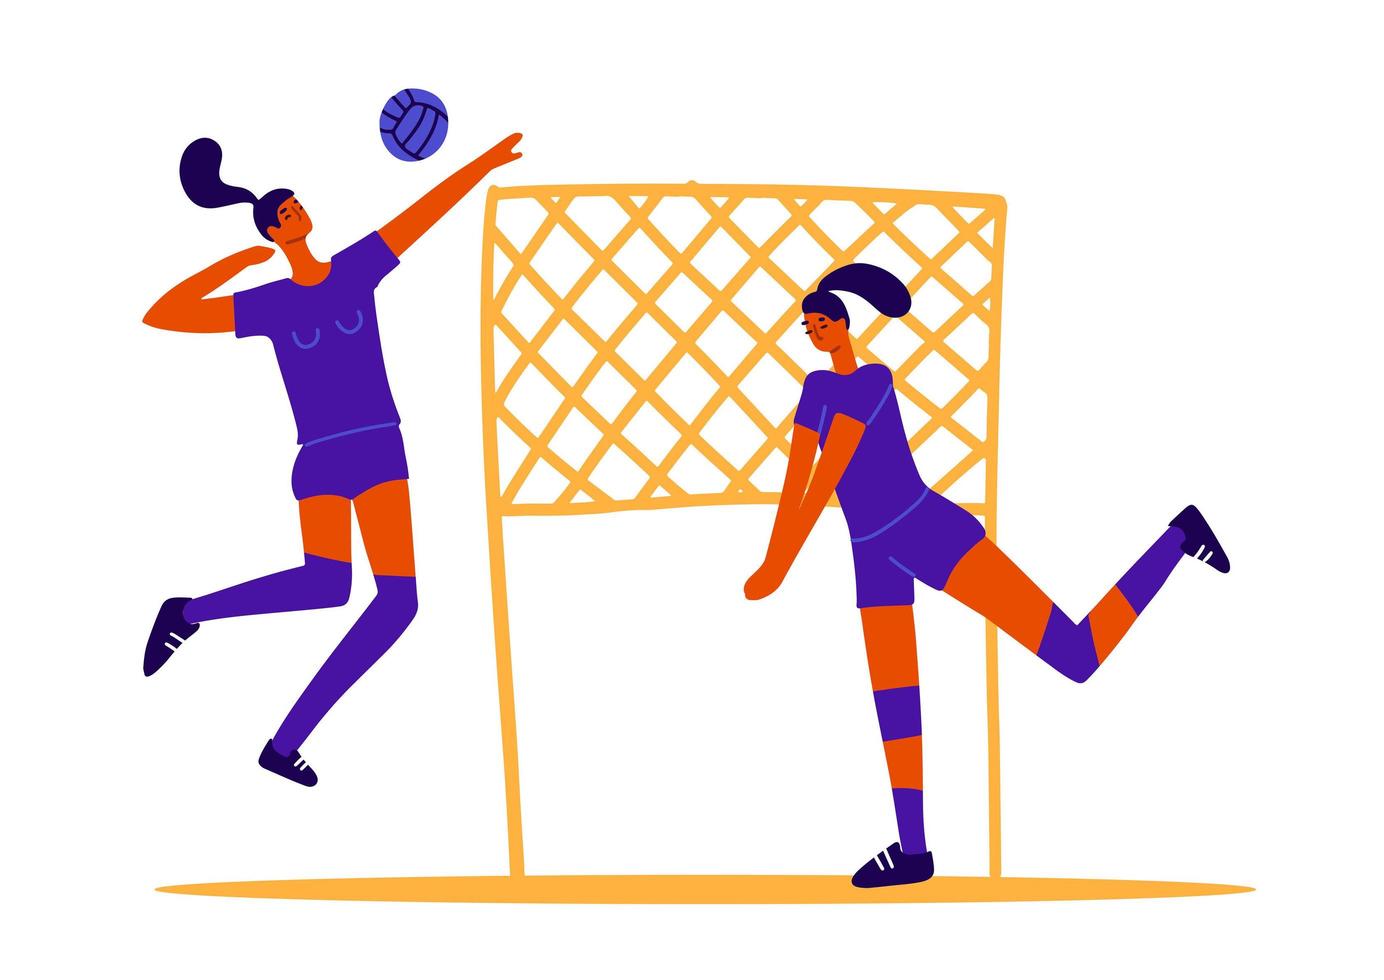 abstrakte volleyballspieler, zwei mädchen, die volleyball spielen, weibliche sportspiele. Ballspiel-Konzept. 2 Frauen spielen Volleyball mit Ball und Netz. flache trendige Vektorgrafiken vektor